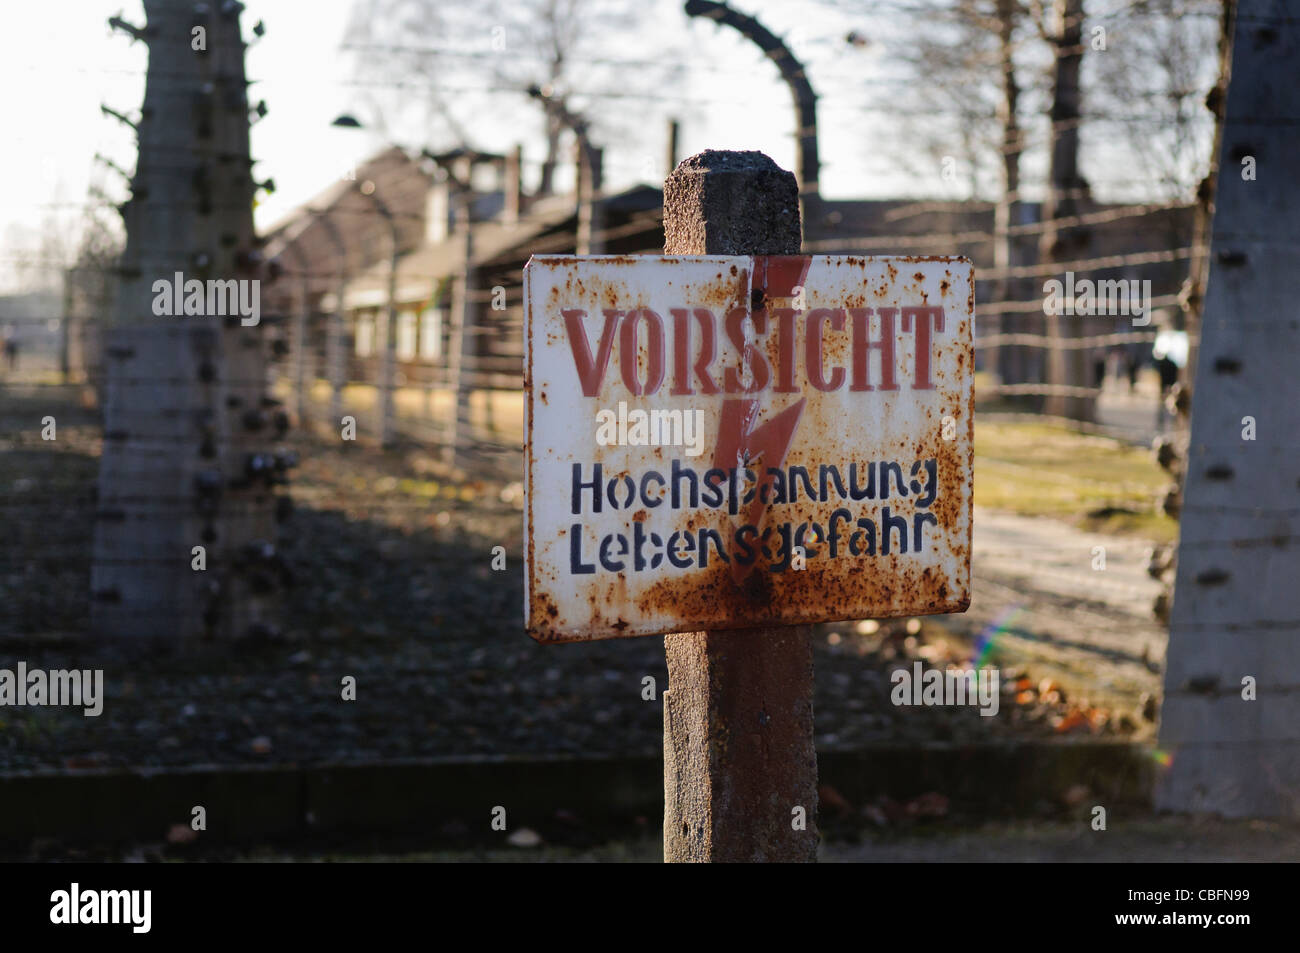 Segno a filo spinato recinto elettrico in Auschwitz 'Vorsicht: hochspannung Lebensgefahr" (Pericolo: alta tensione) Foto Stock